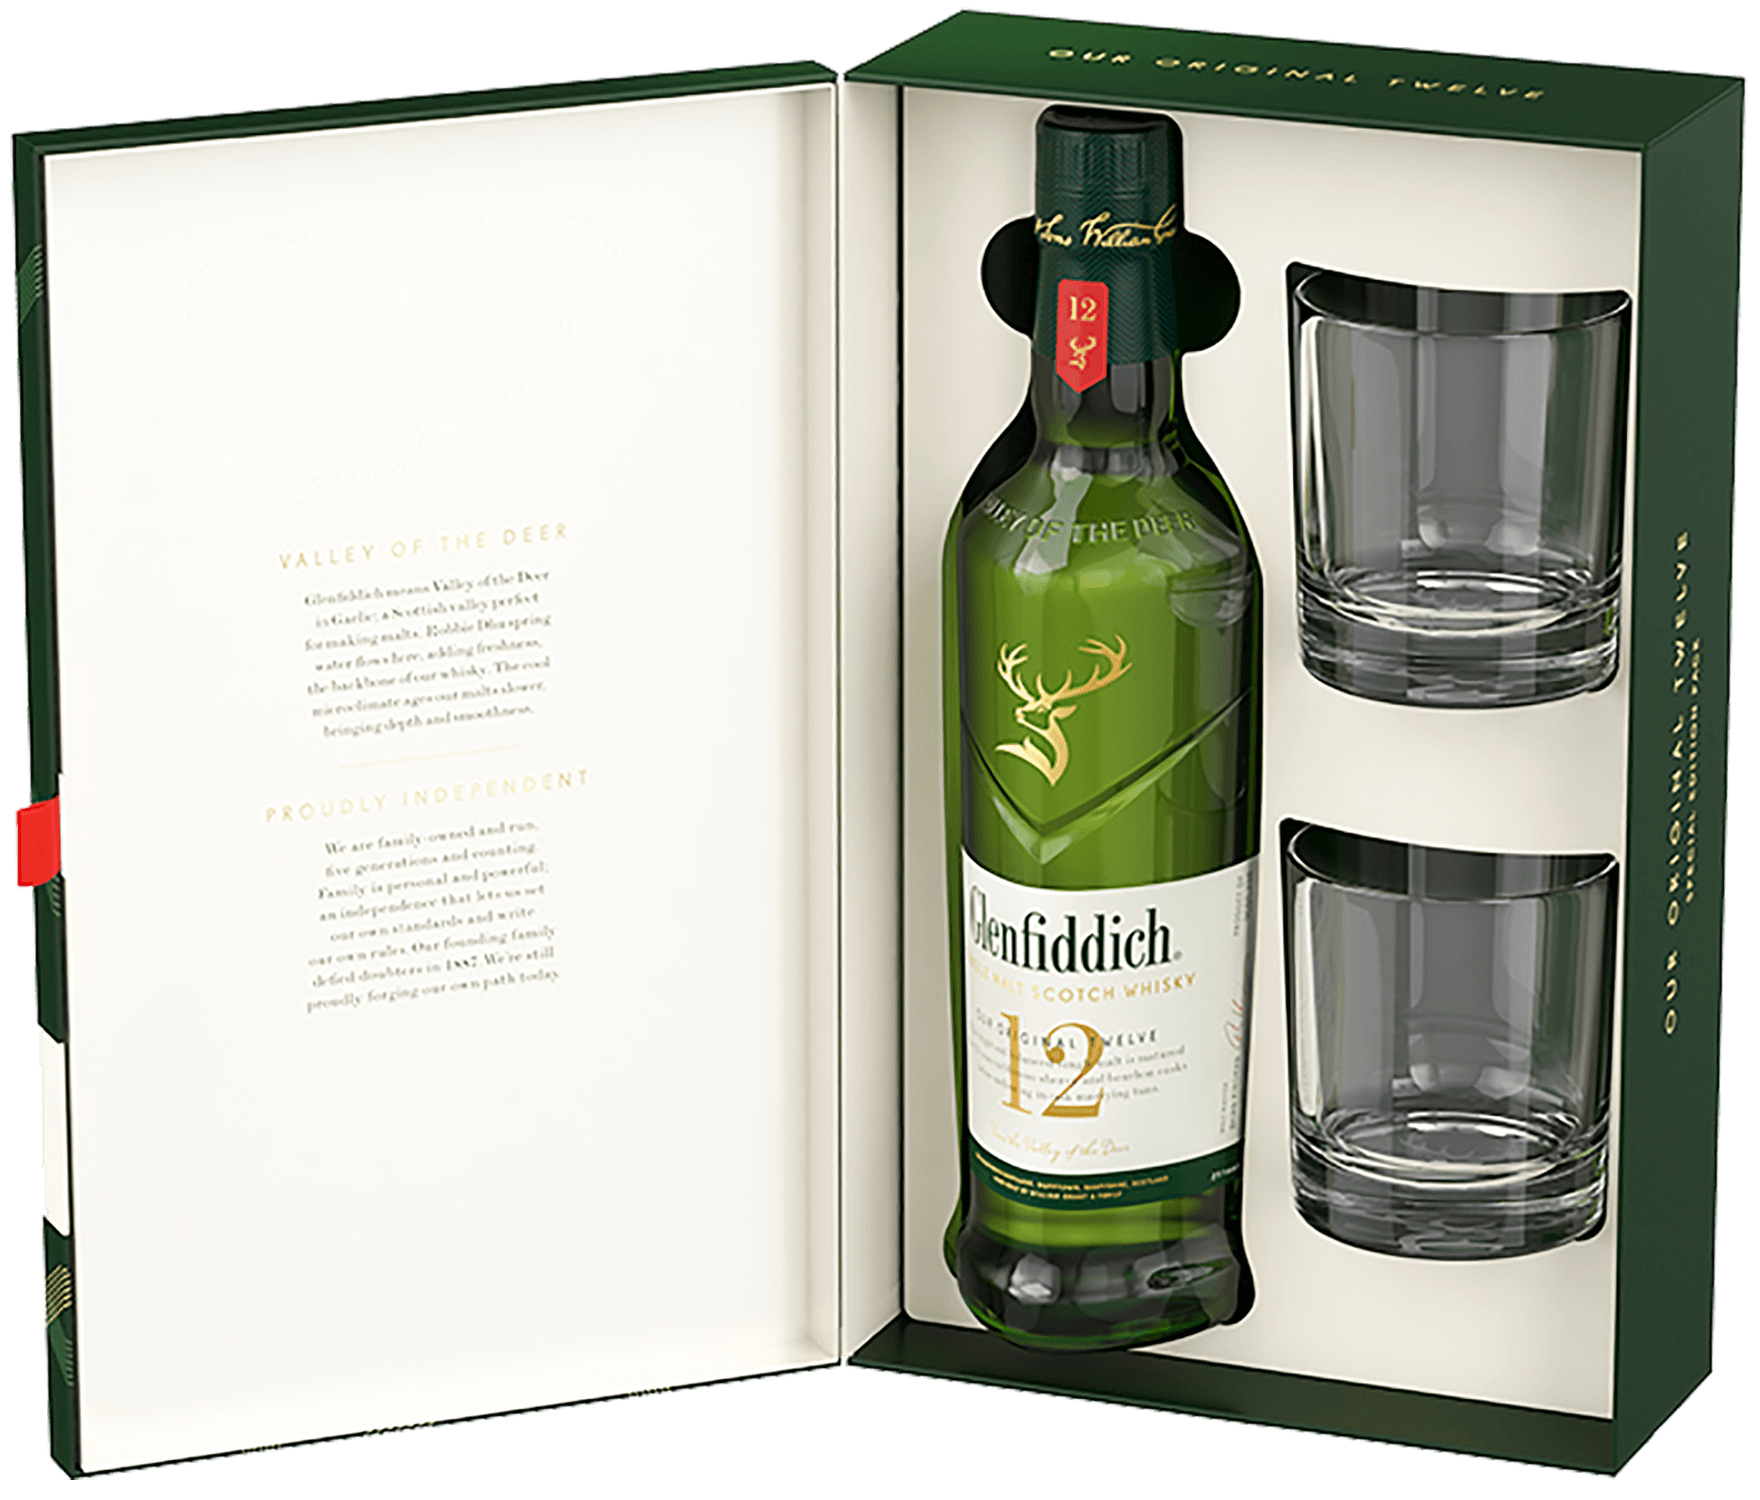 Glenfiddich Single Malt Scotch Whisky 12 y.o. (gift box with 2 glasses) glenfiddich single malt scotch whisky 15 yo gift box